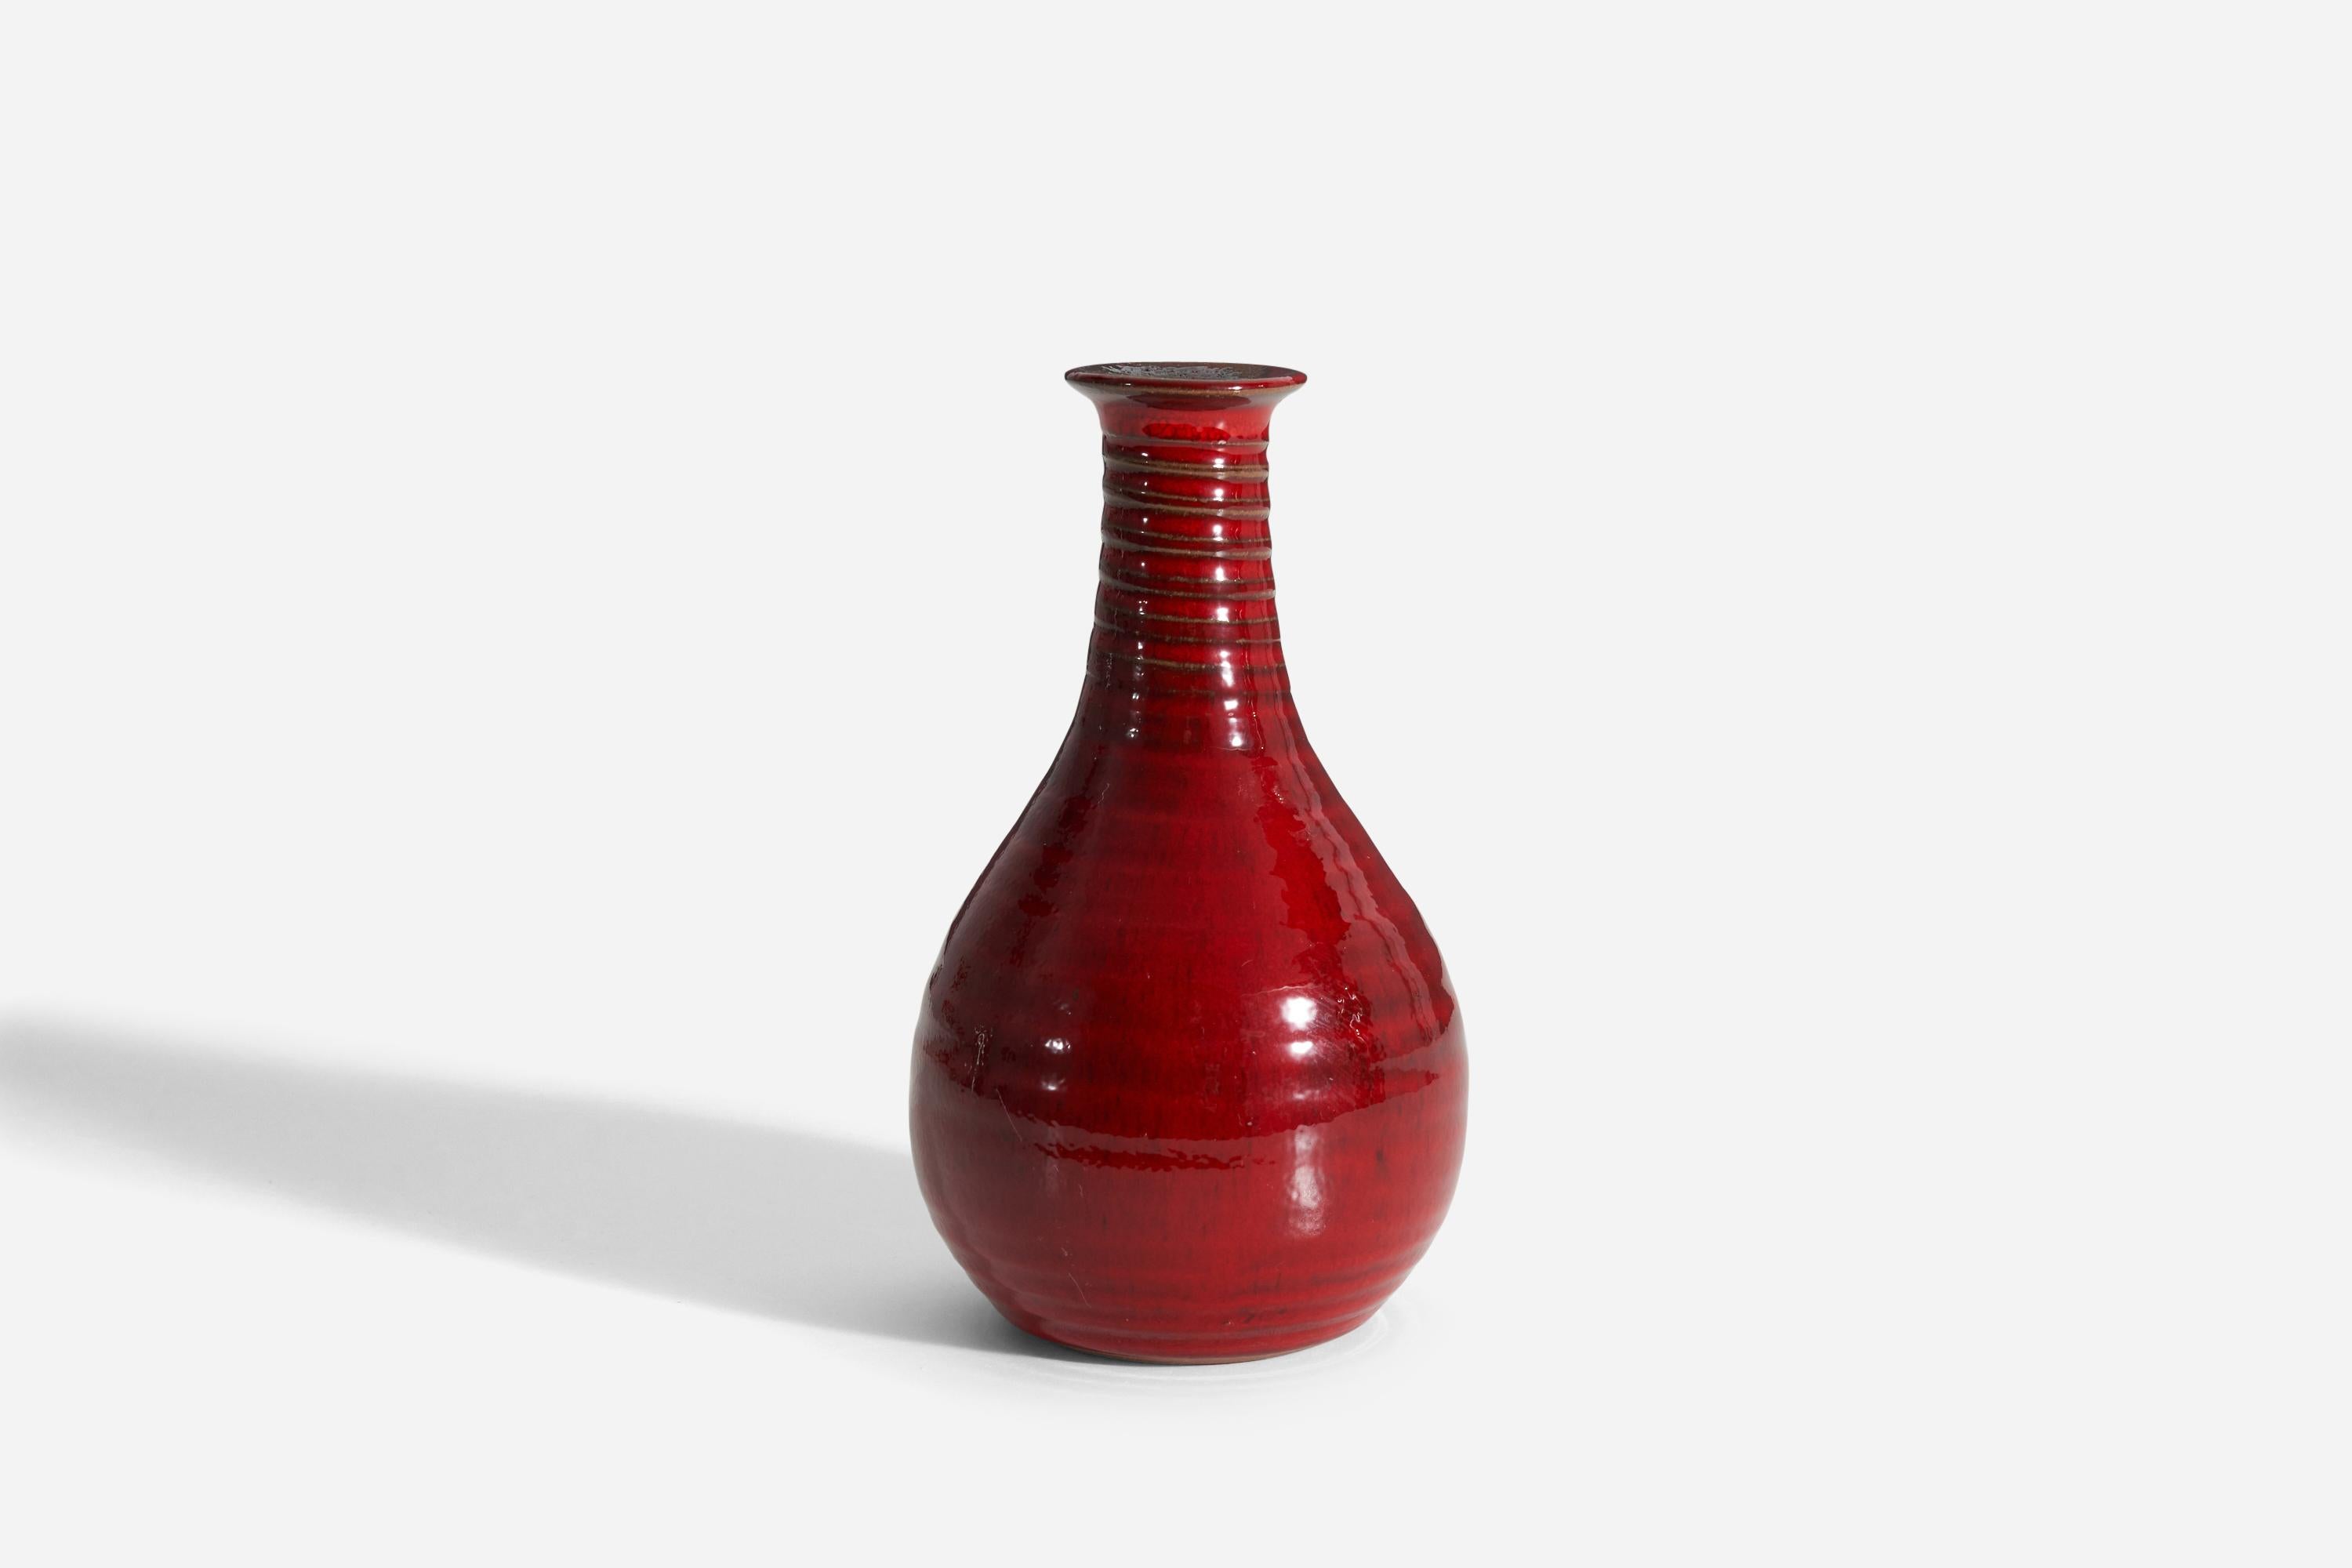 Un vase en grès émaillé rouge conçu et produit en Suède, vers les années 1960, avec une signature sur le dessous.